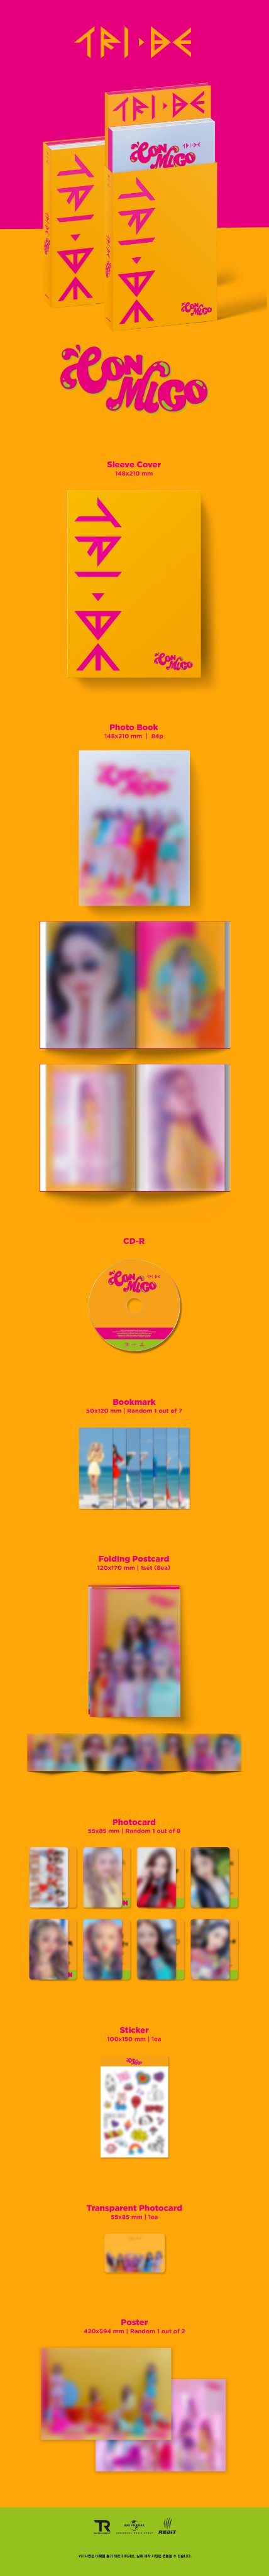 트라이비 TRI.BE 2nd Single Album [CONMIGO] 트랙리스트 / 앨범프리뷰